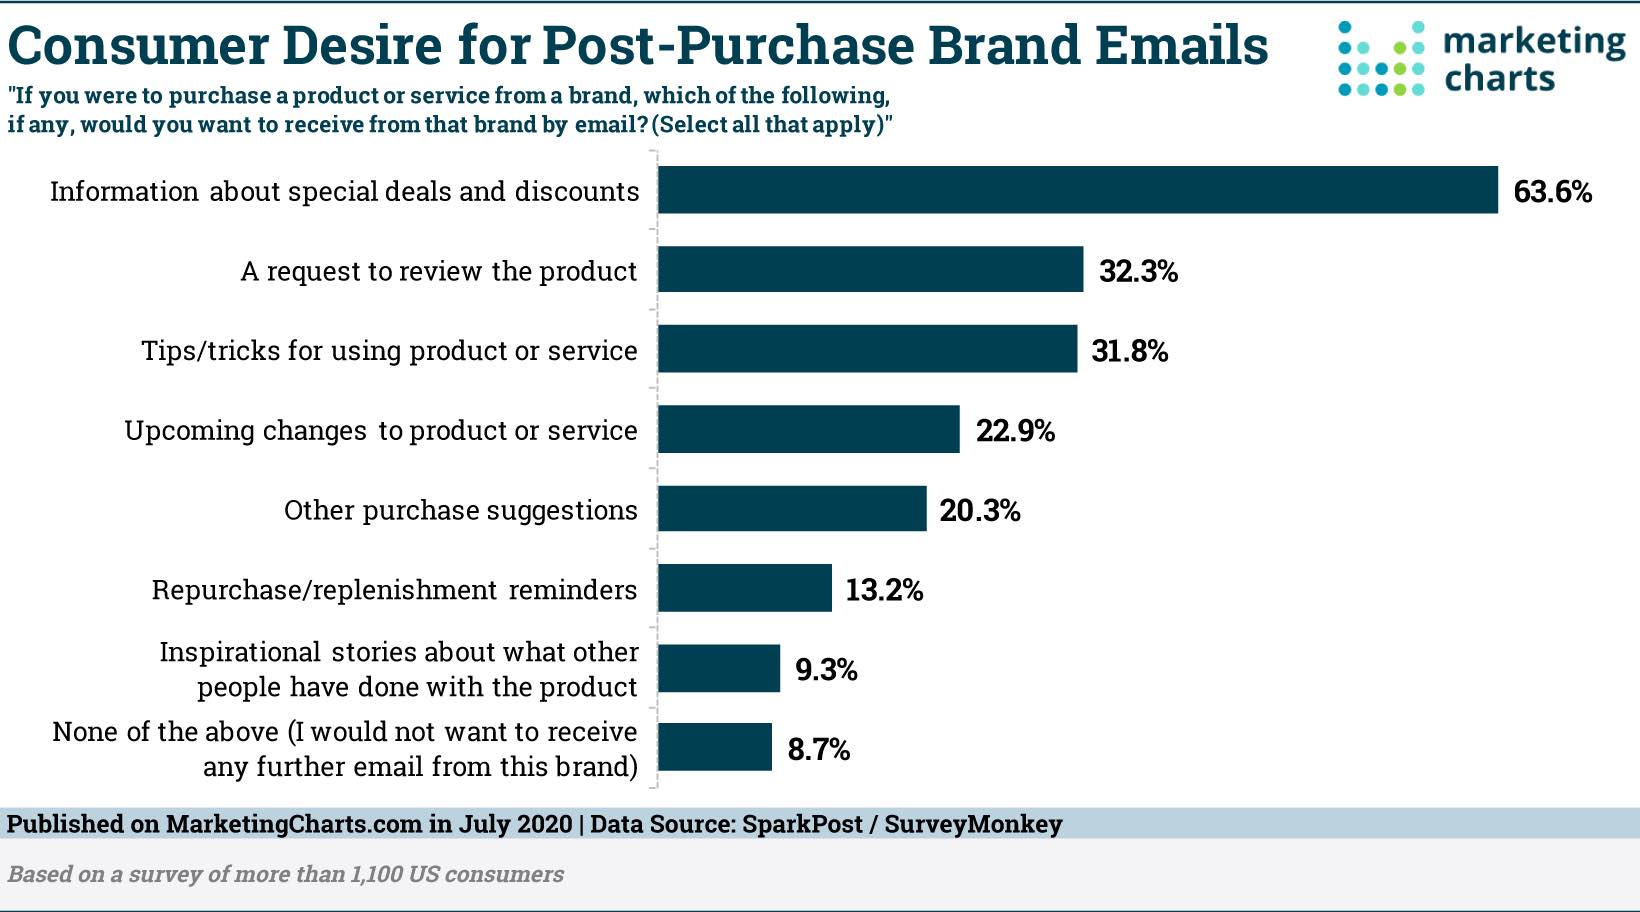 klienci oczekują, że marka utrzyma komunikację z nimi po zakupie – narzędzia do e-mail marketingu